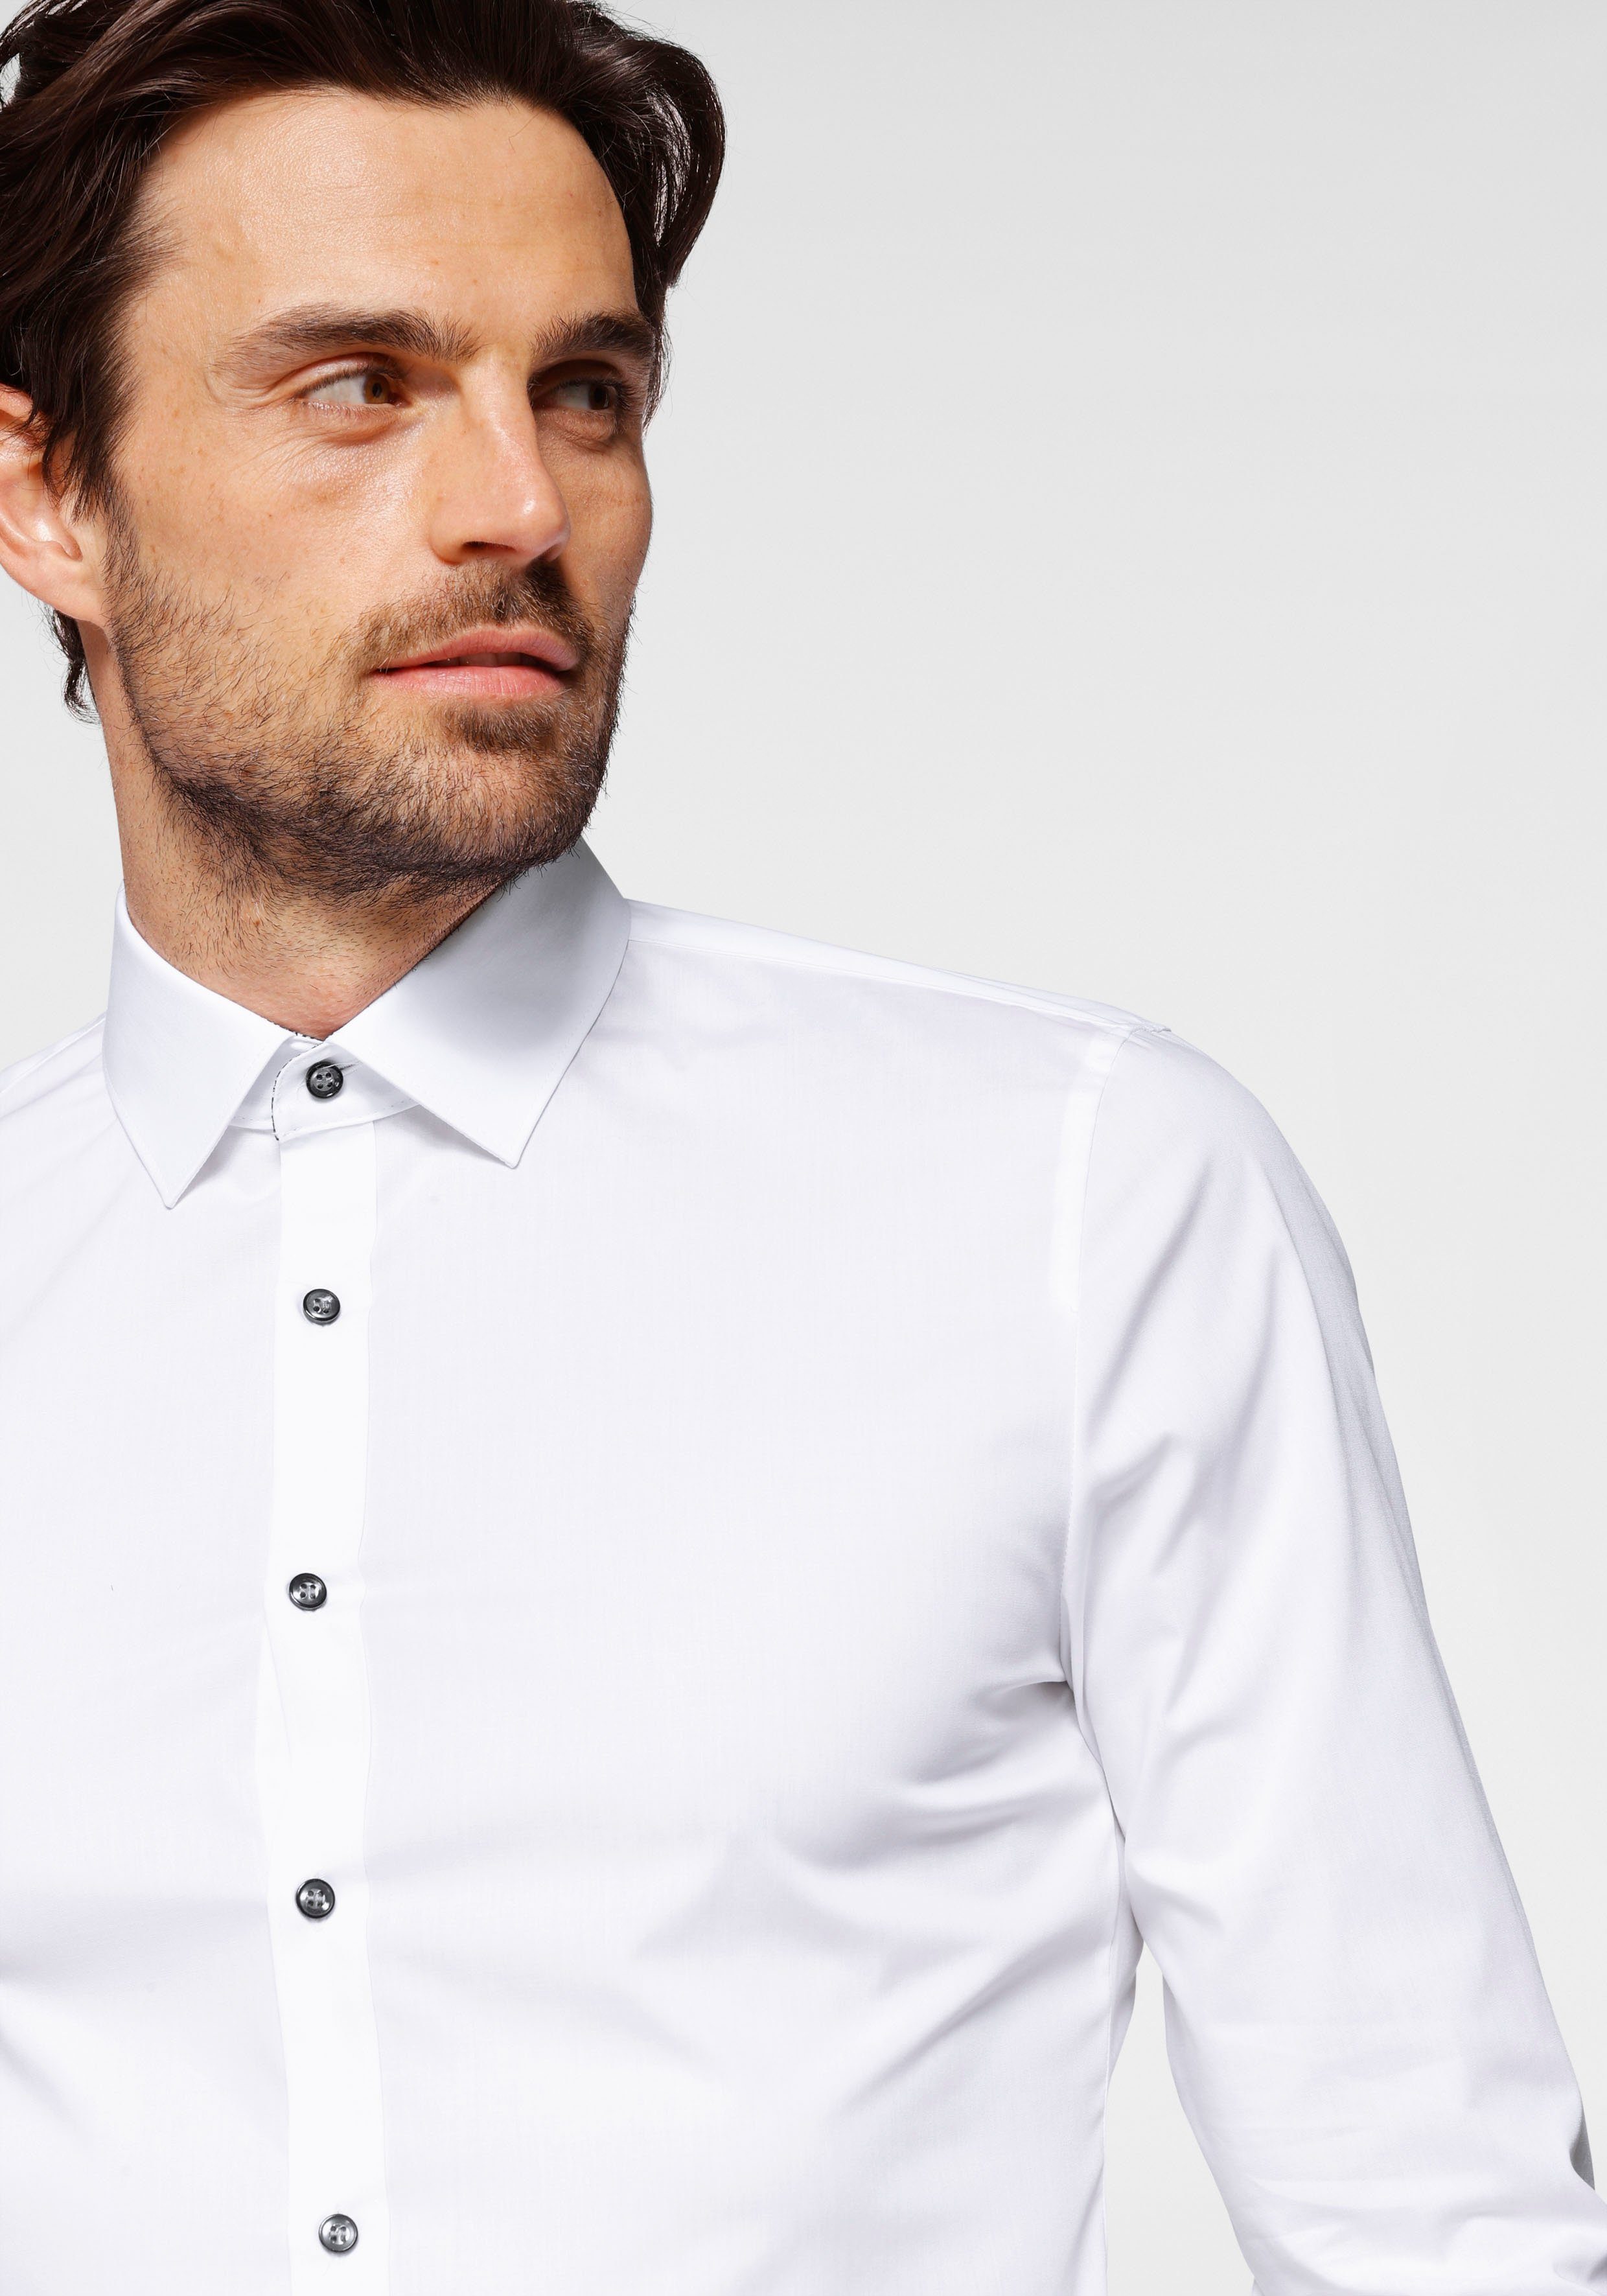 Six Comfort OLYMP slim Stretch, super weiß-anthrazit-kontrastfarbene Details No. Businesshemd slim, super bügelleicht